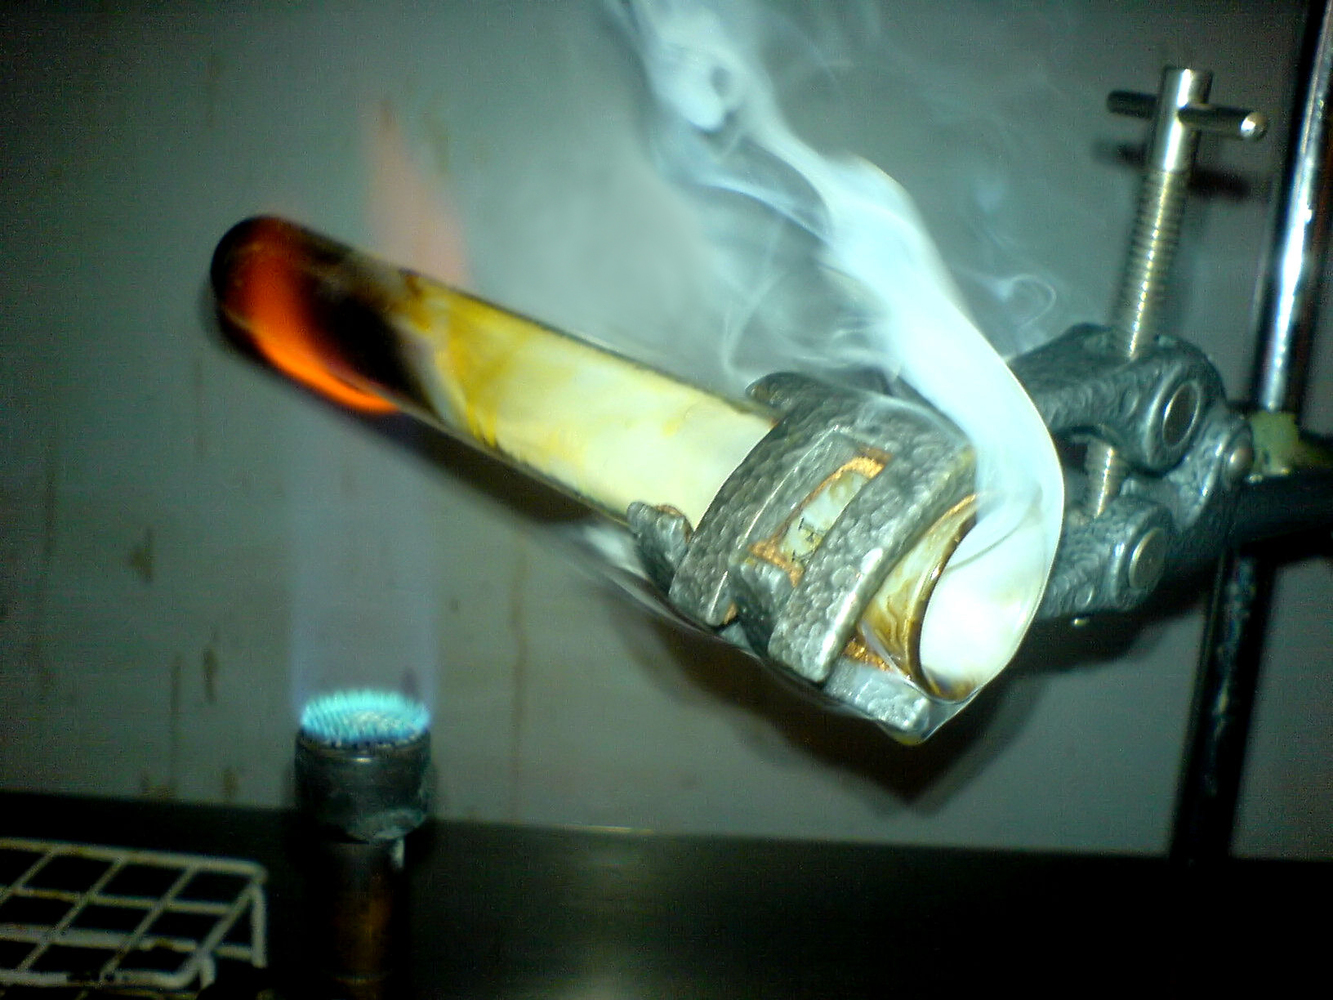 Test tube over bunsen burner.